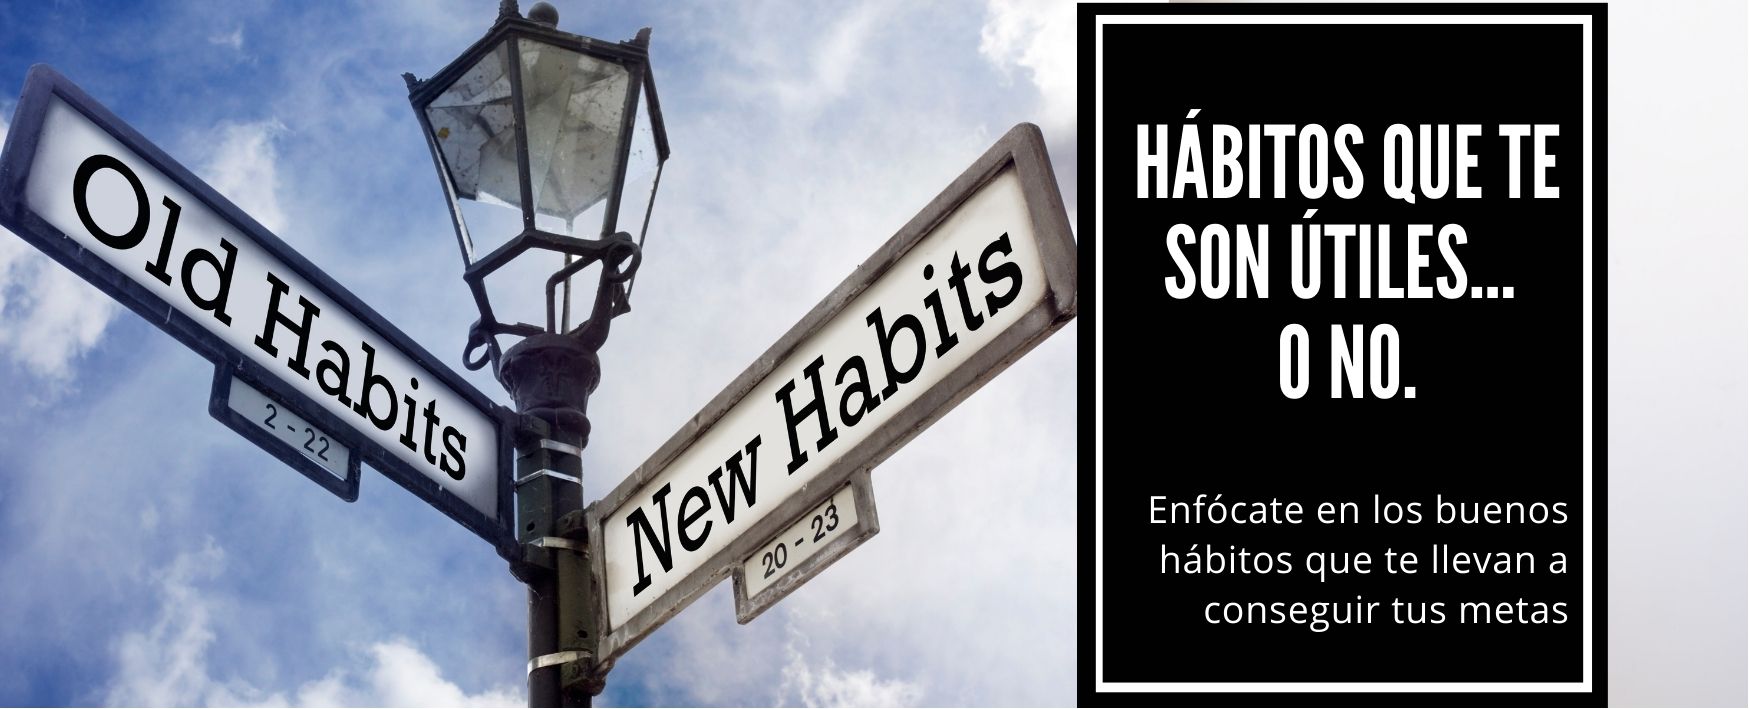 Hábitos que te son útiles… o no…